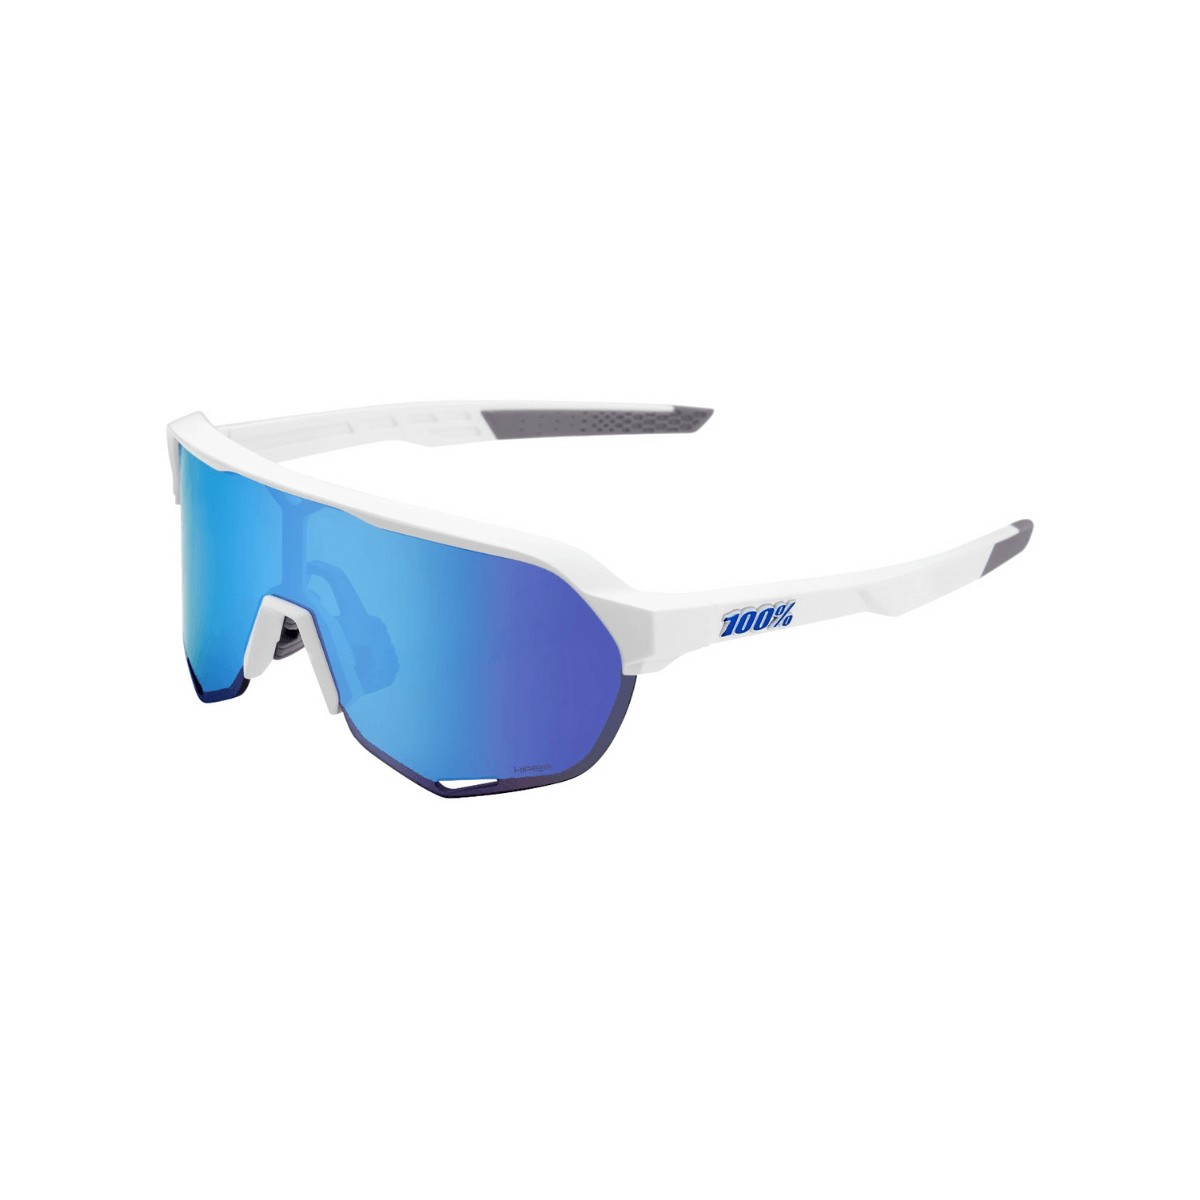 Die 100  günstig Kaufen-100% S2 Brille - Mattweiß - Multilayer Hyper Blue Gläser. 100% S2 Brille - Mattweiß - Multilayer Hyper Blue Gläser <![CDATA[100% S2 Brille - Mattweiß - Multilayer Hyper Blue Gläser Diese 100% S2-Sonnenbrille ist mit dem HiPER Blue Mu